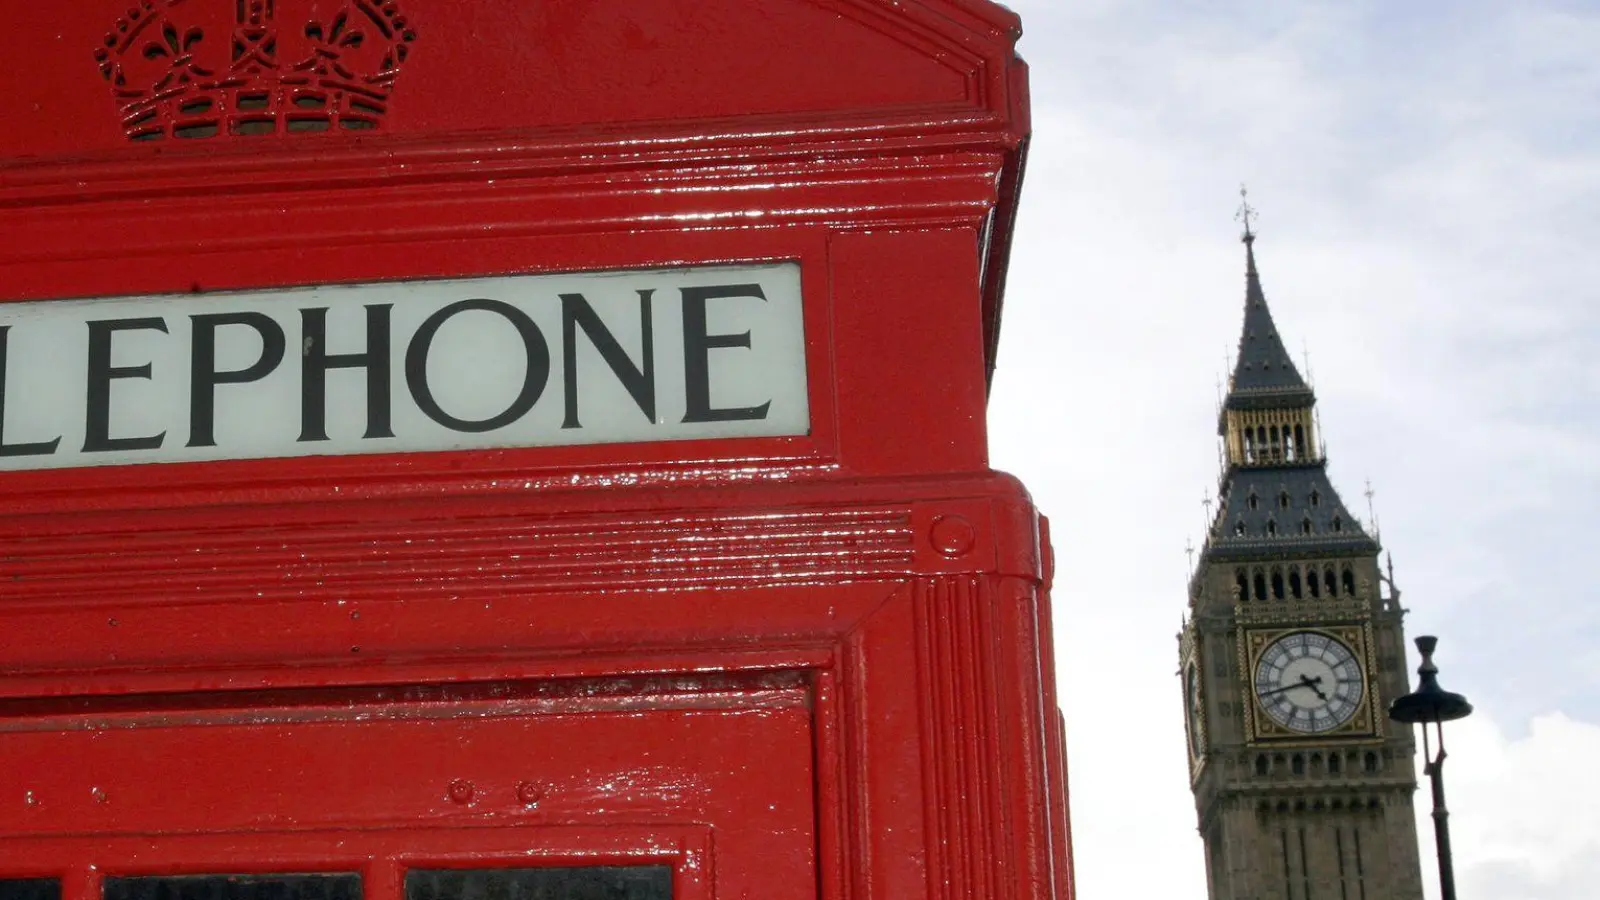 Eine rote Telefonzelle und der Big Ben - zwei Klassiker in einem Bild. (Foto: Frank May/dpa)